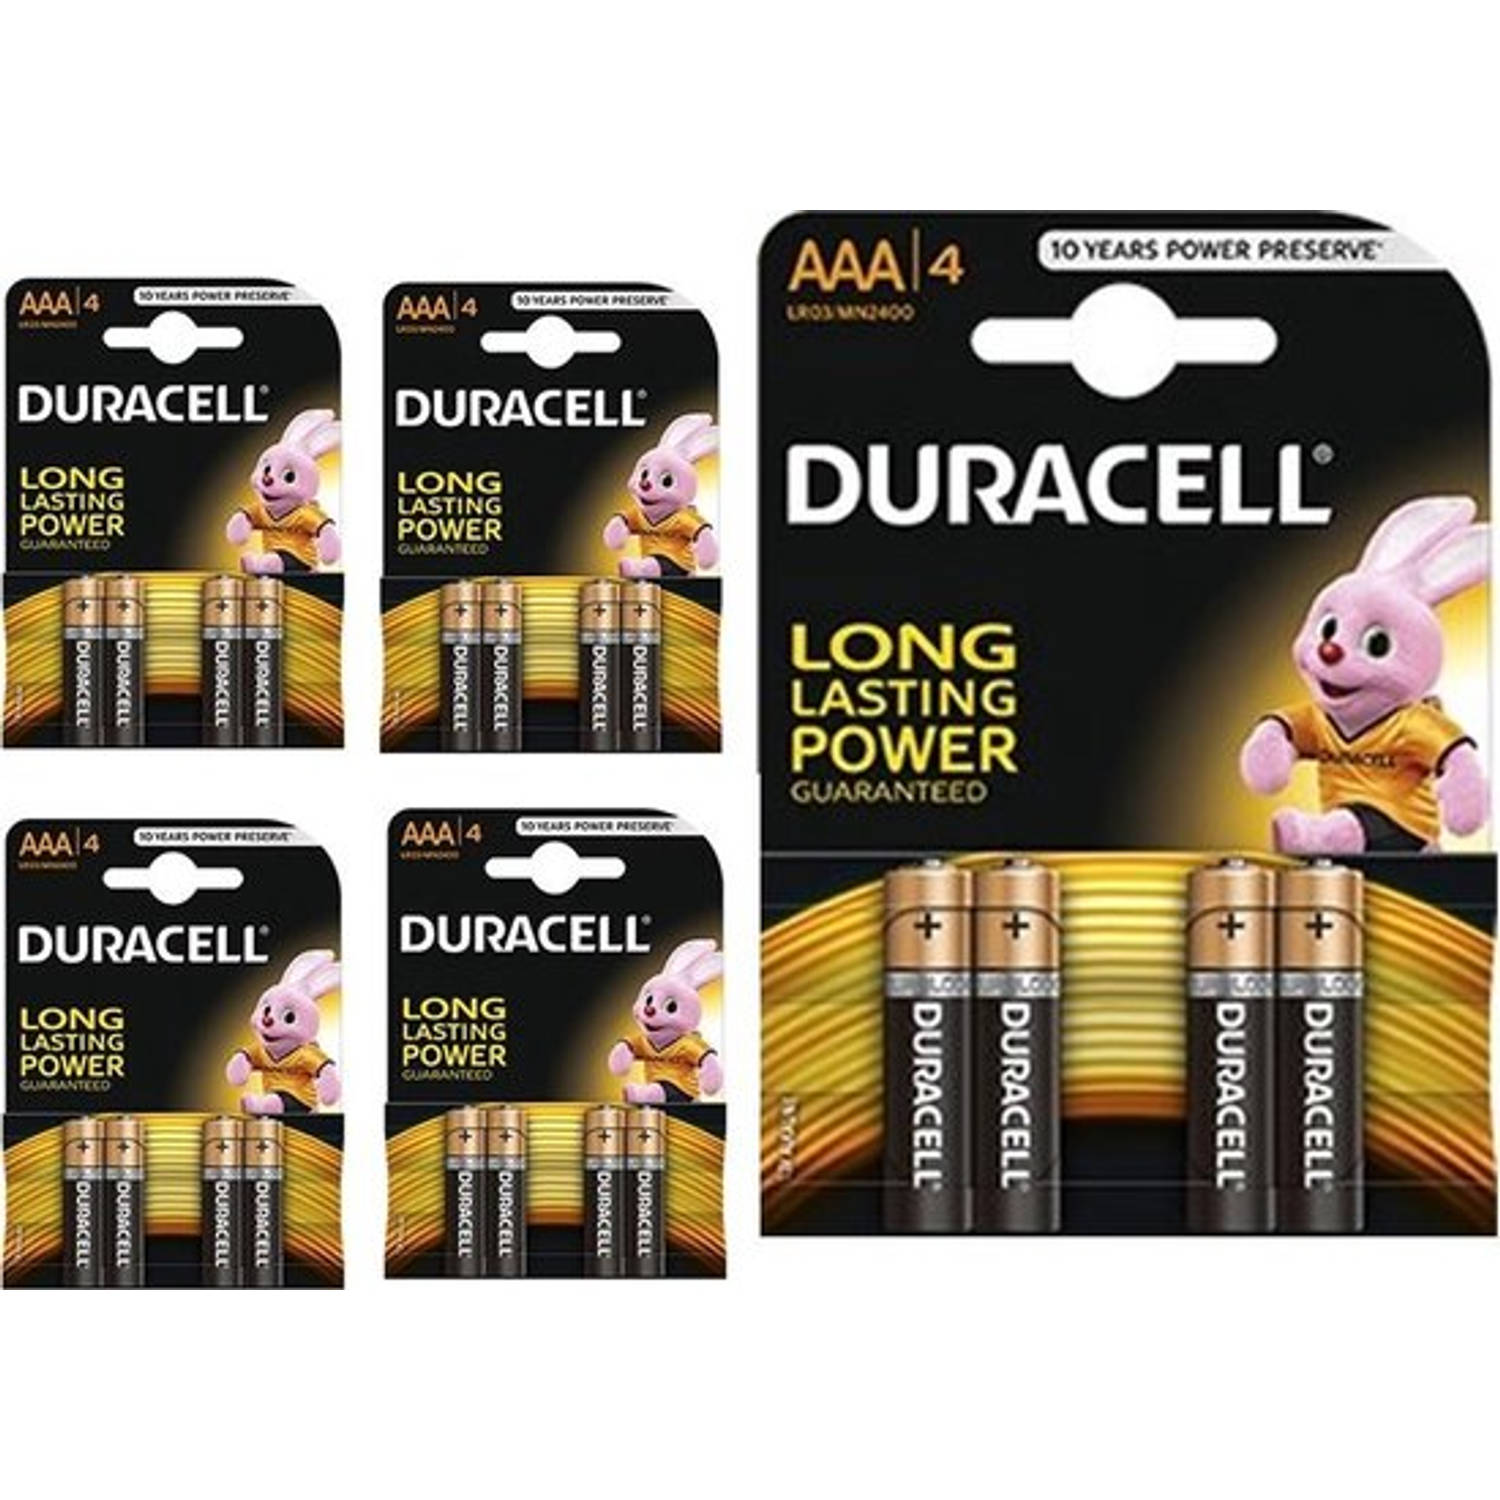 20 Stuks (5 Blisters a 4st) - Duracell Basic LR03 / AAA / R03 / MN 2400 1.5V alkaline batterij